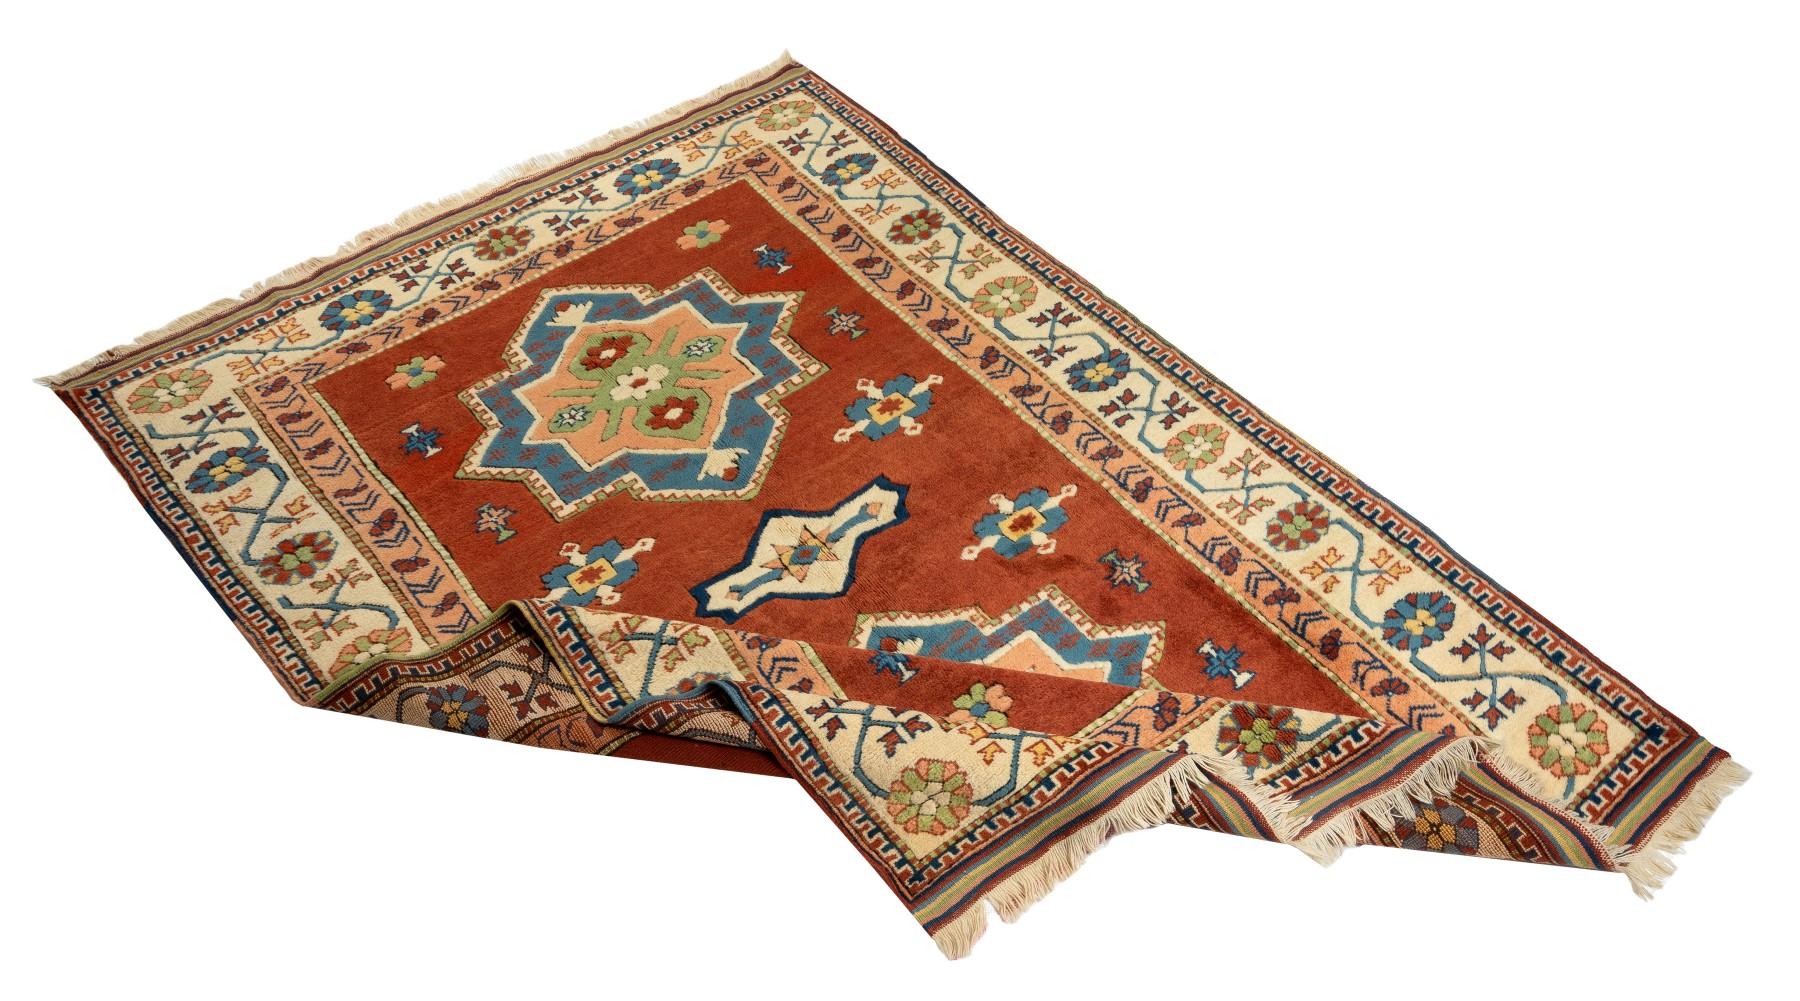 Ein neuer handgeknüpfter türkischer Teppich mit ausgezeichnetem, glänzendem, weichem Flor aus mittlerer Wolle. Der Teppich weist zwei große geometrische Medaillons sowie mehrere kleinere Medaillons in leuchtendem Ceruleanblau, Pfirsich, Elfenbein